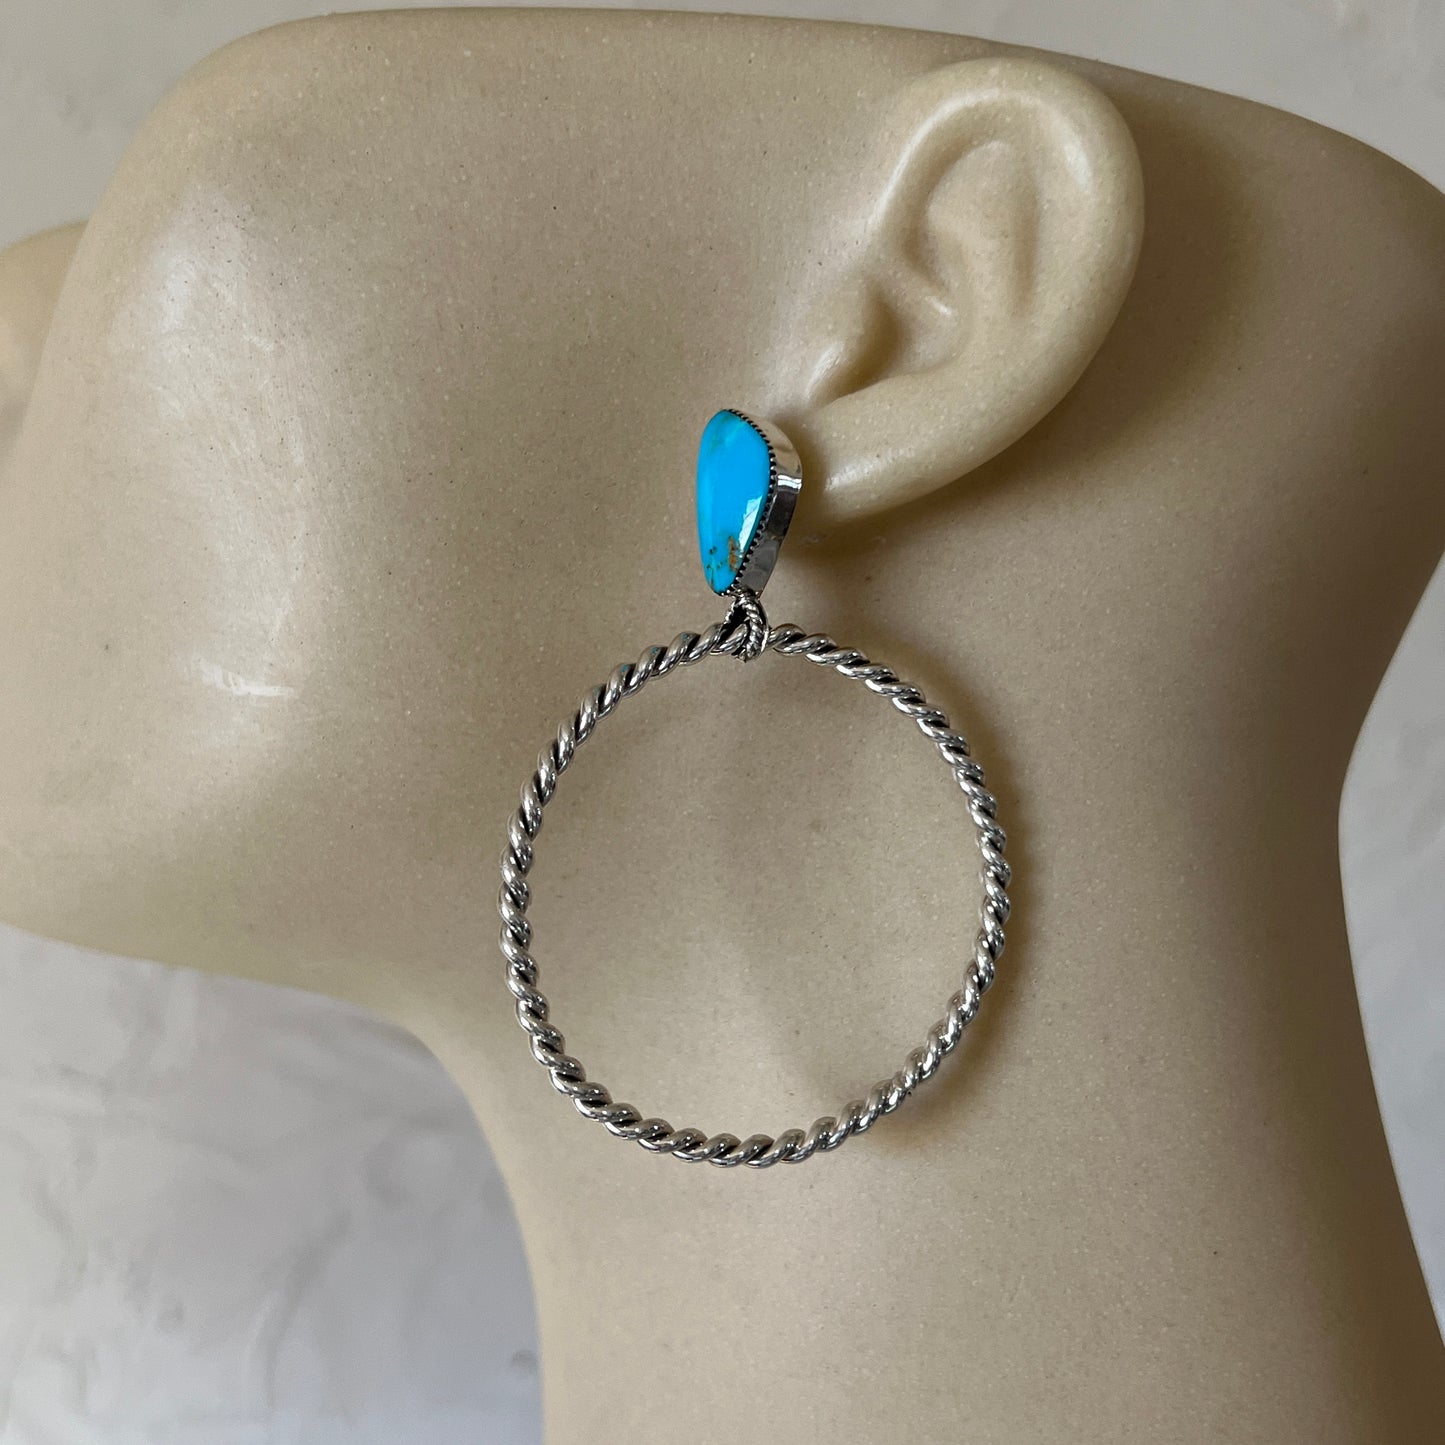 Blue Kingman turquoise hoop earrings, Navajo handmade, Jerome Lee #2, sterling silver post stud